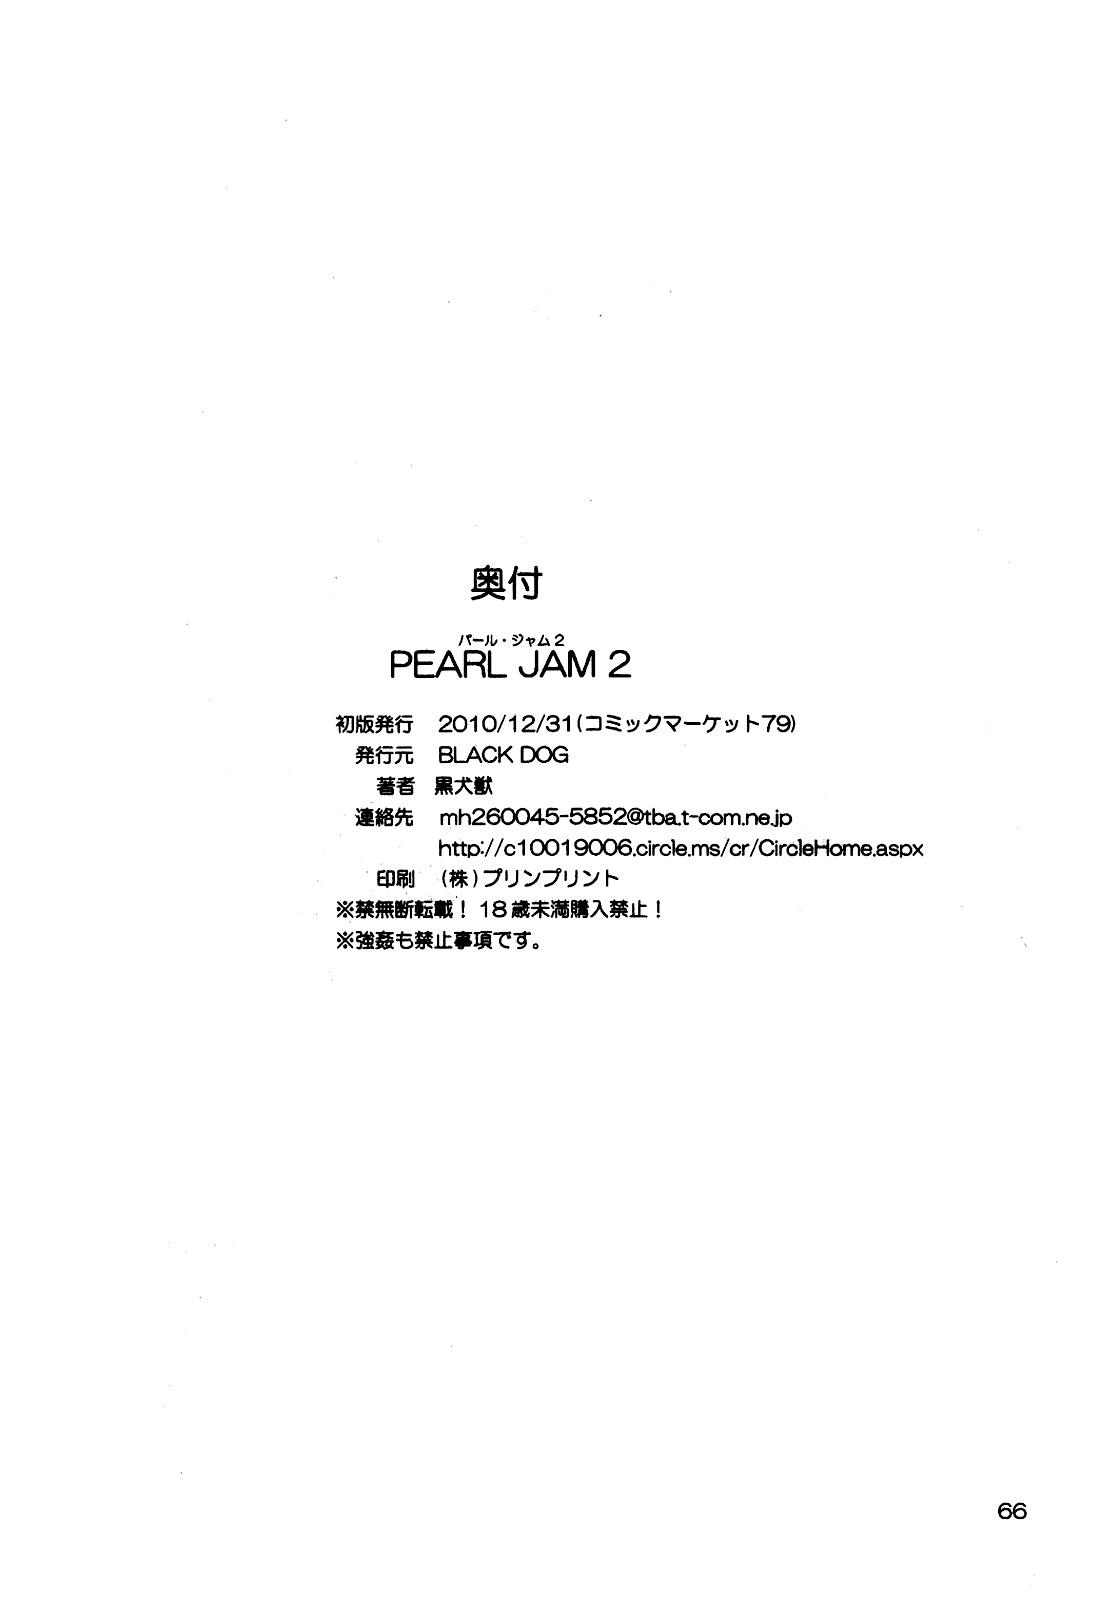 Pearl Jam 2 64